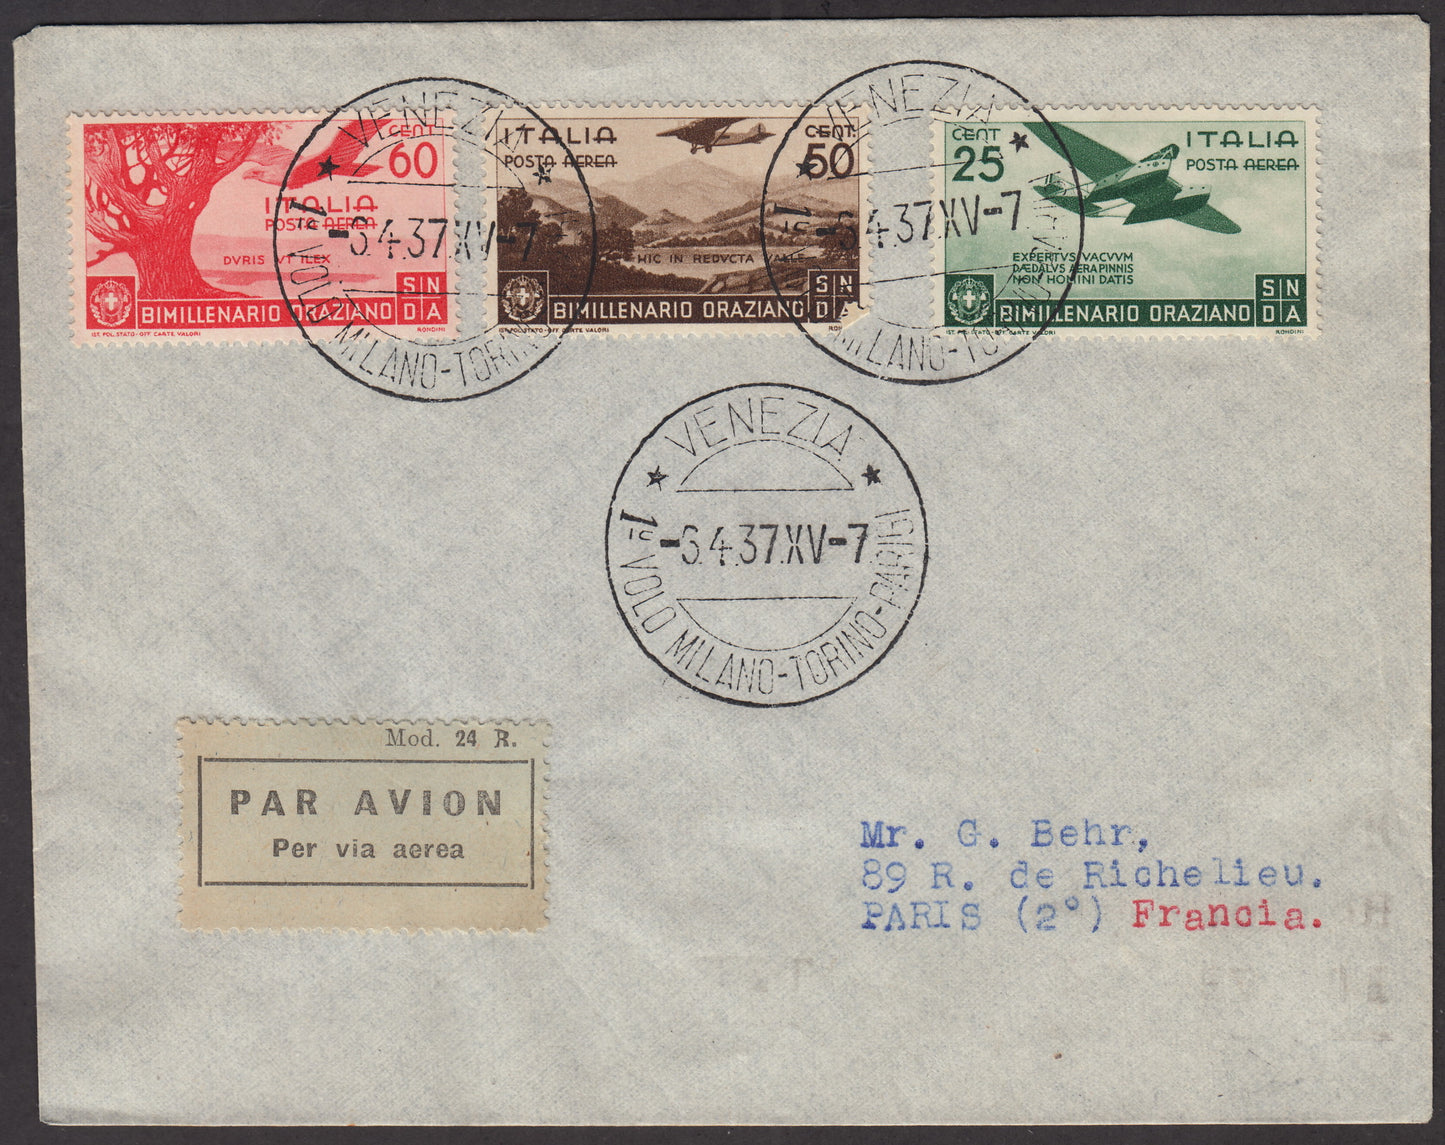 1937 - Primo volo Torino - Parigi 3/4/37 Orazio c. 10 verde + Posta Aerea c. 50 bruno + c. 60 carminio (243 + 398 + A96 + A97)